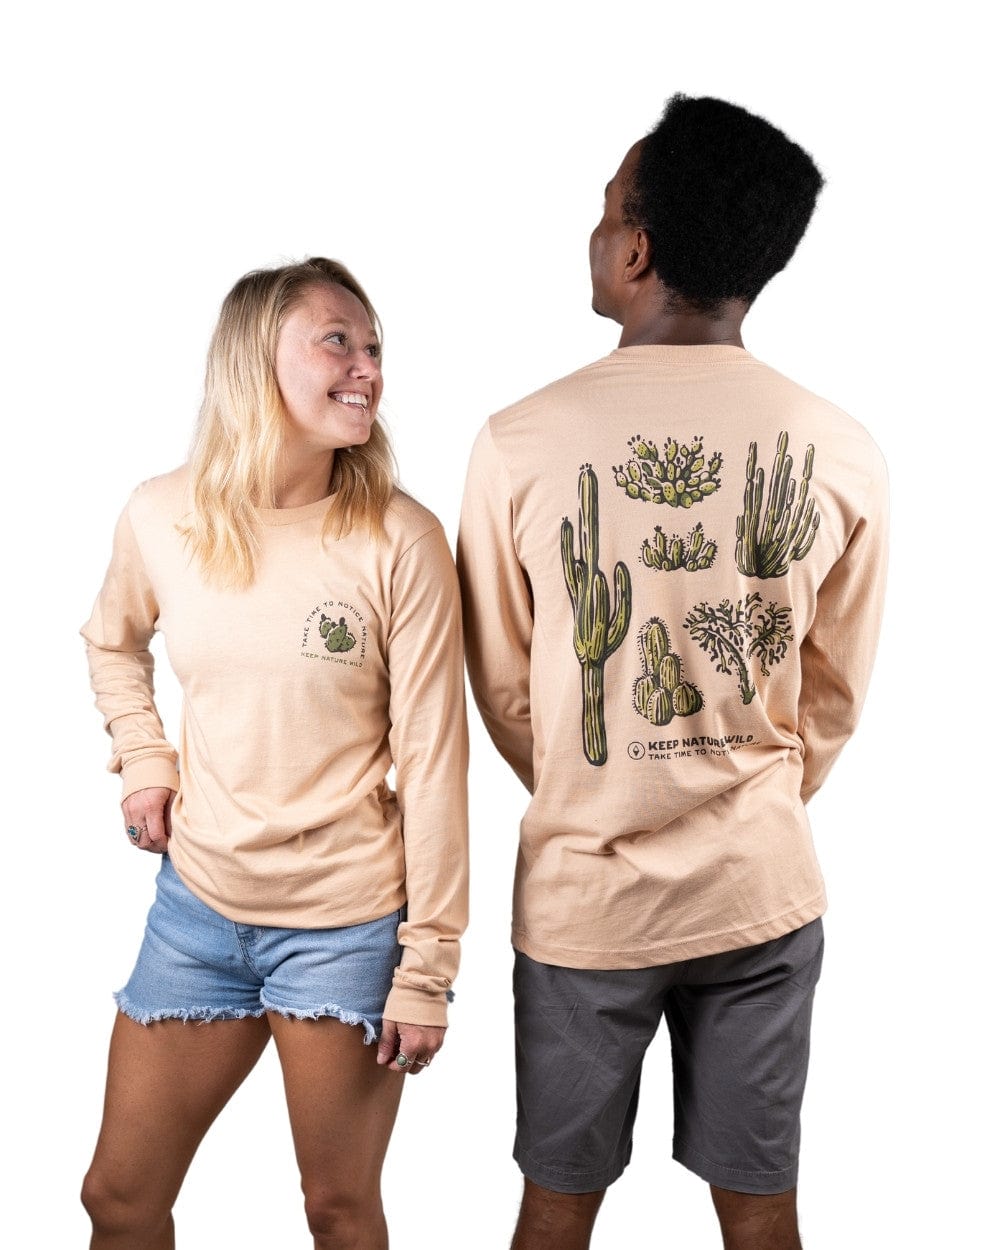 Keep Nature Wild Long Sleeve Nature Study Cacti Unisex Long Sleeve | Sand Dune